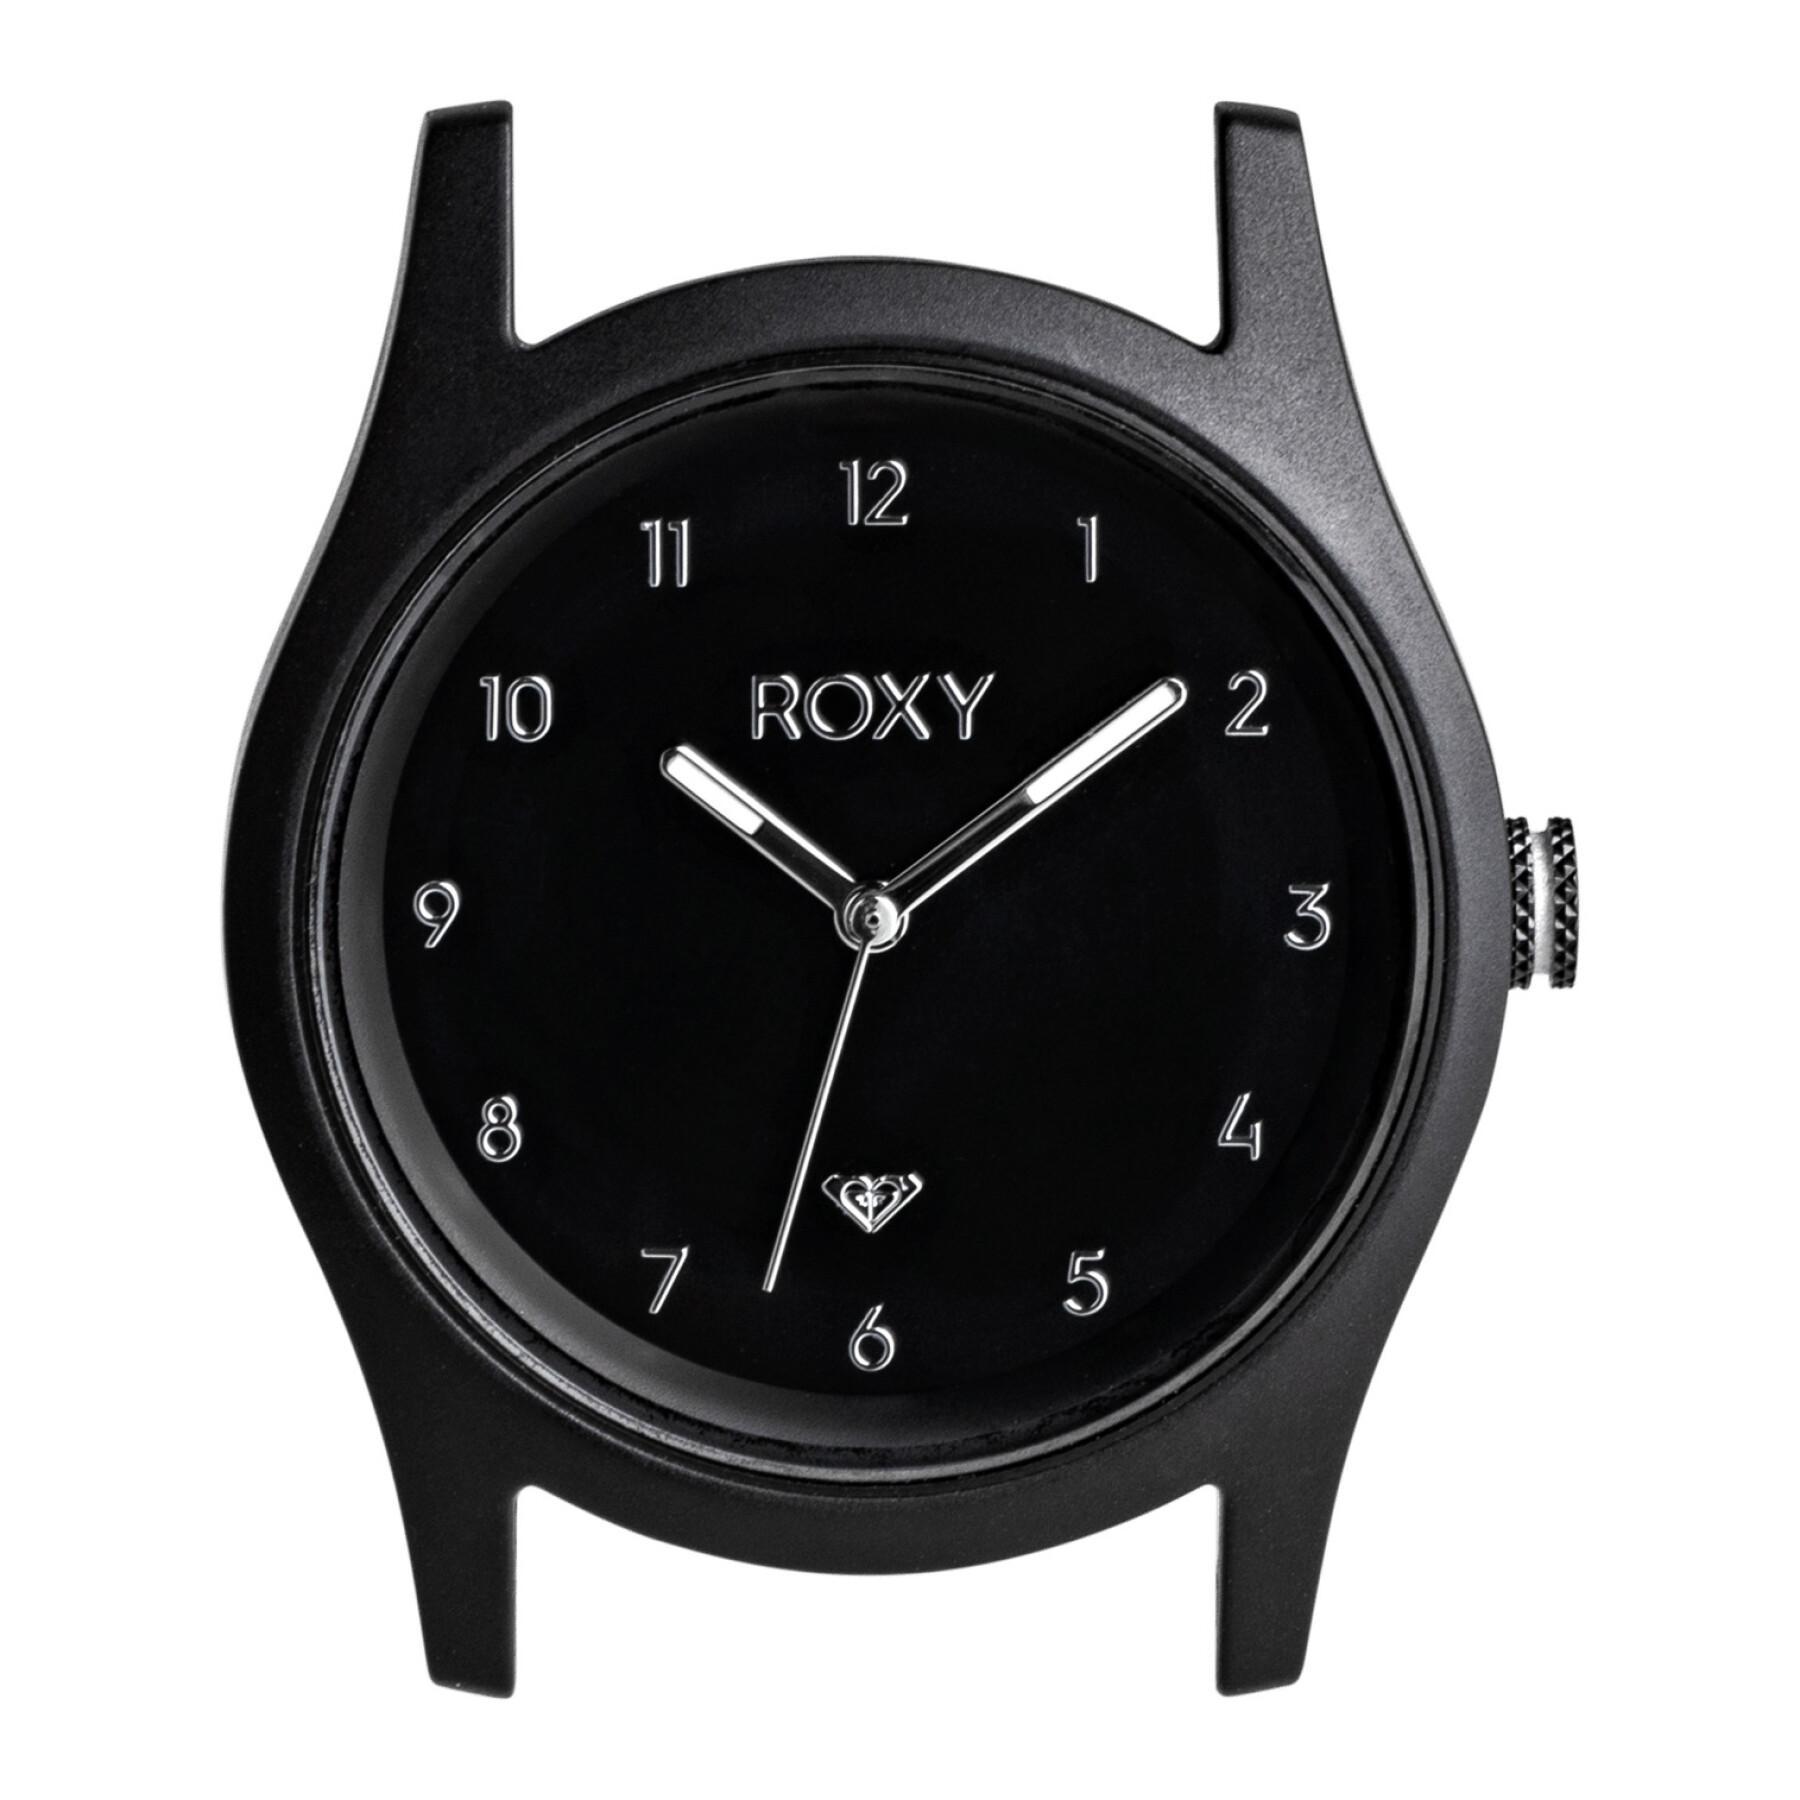 Cassa dell'orologio analogico da donna Roxy Ally Classic